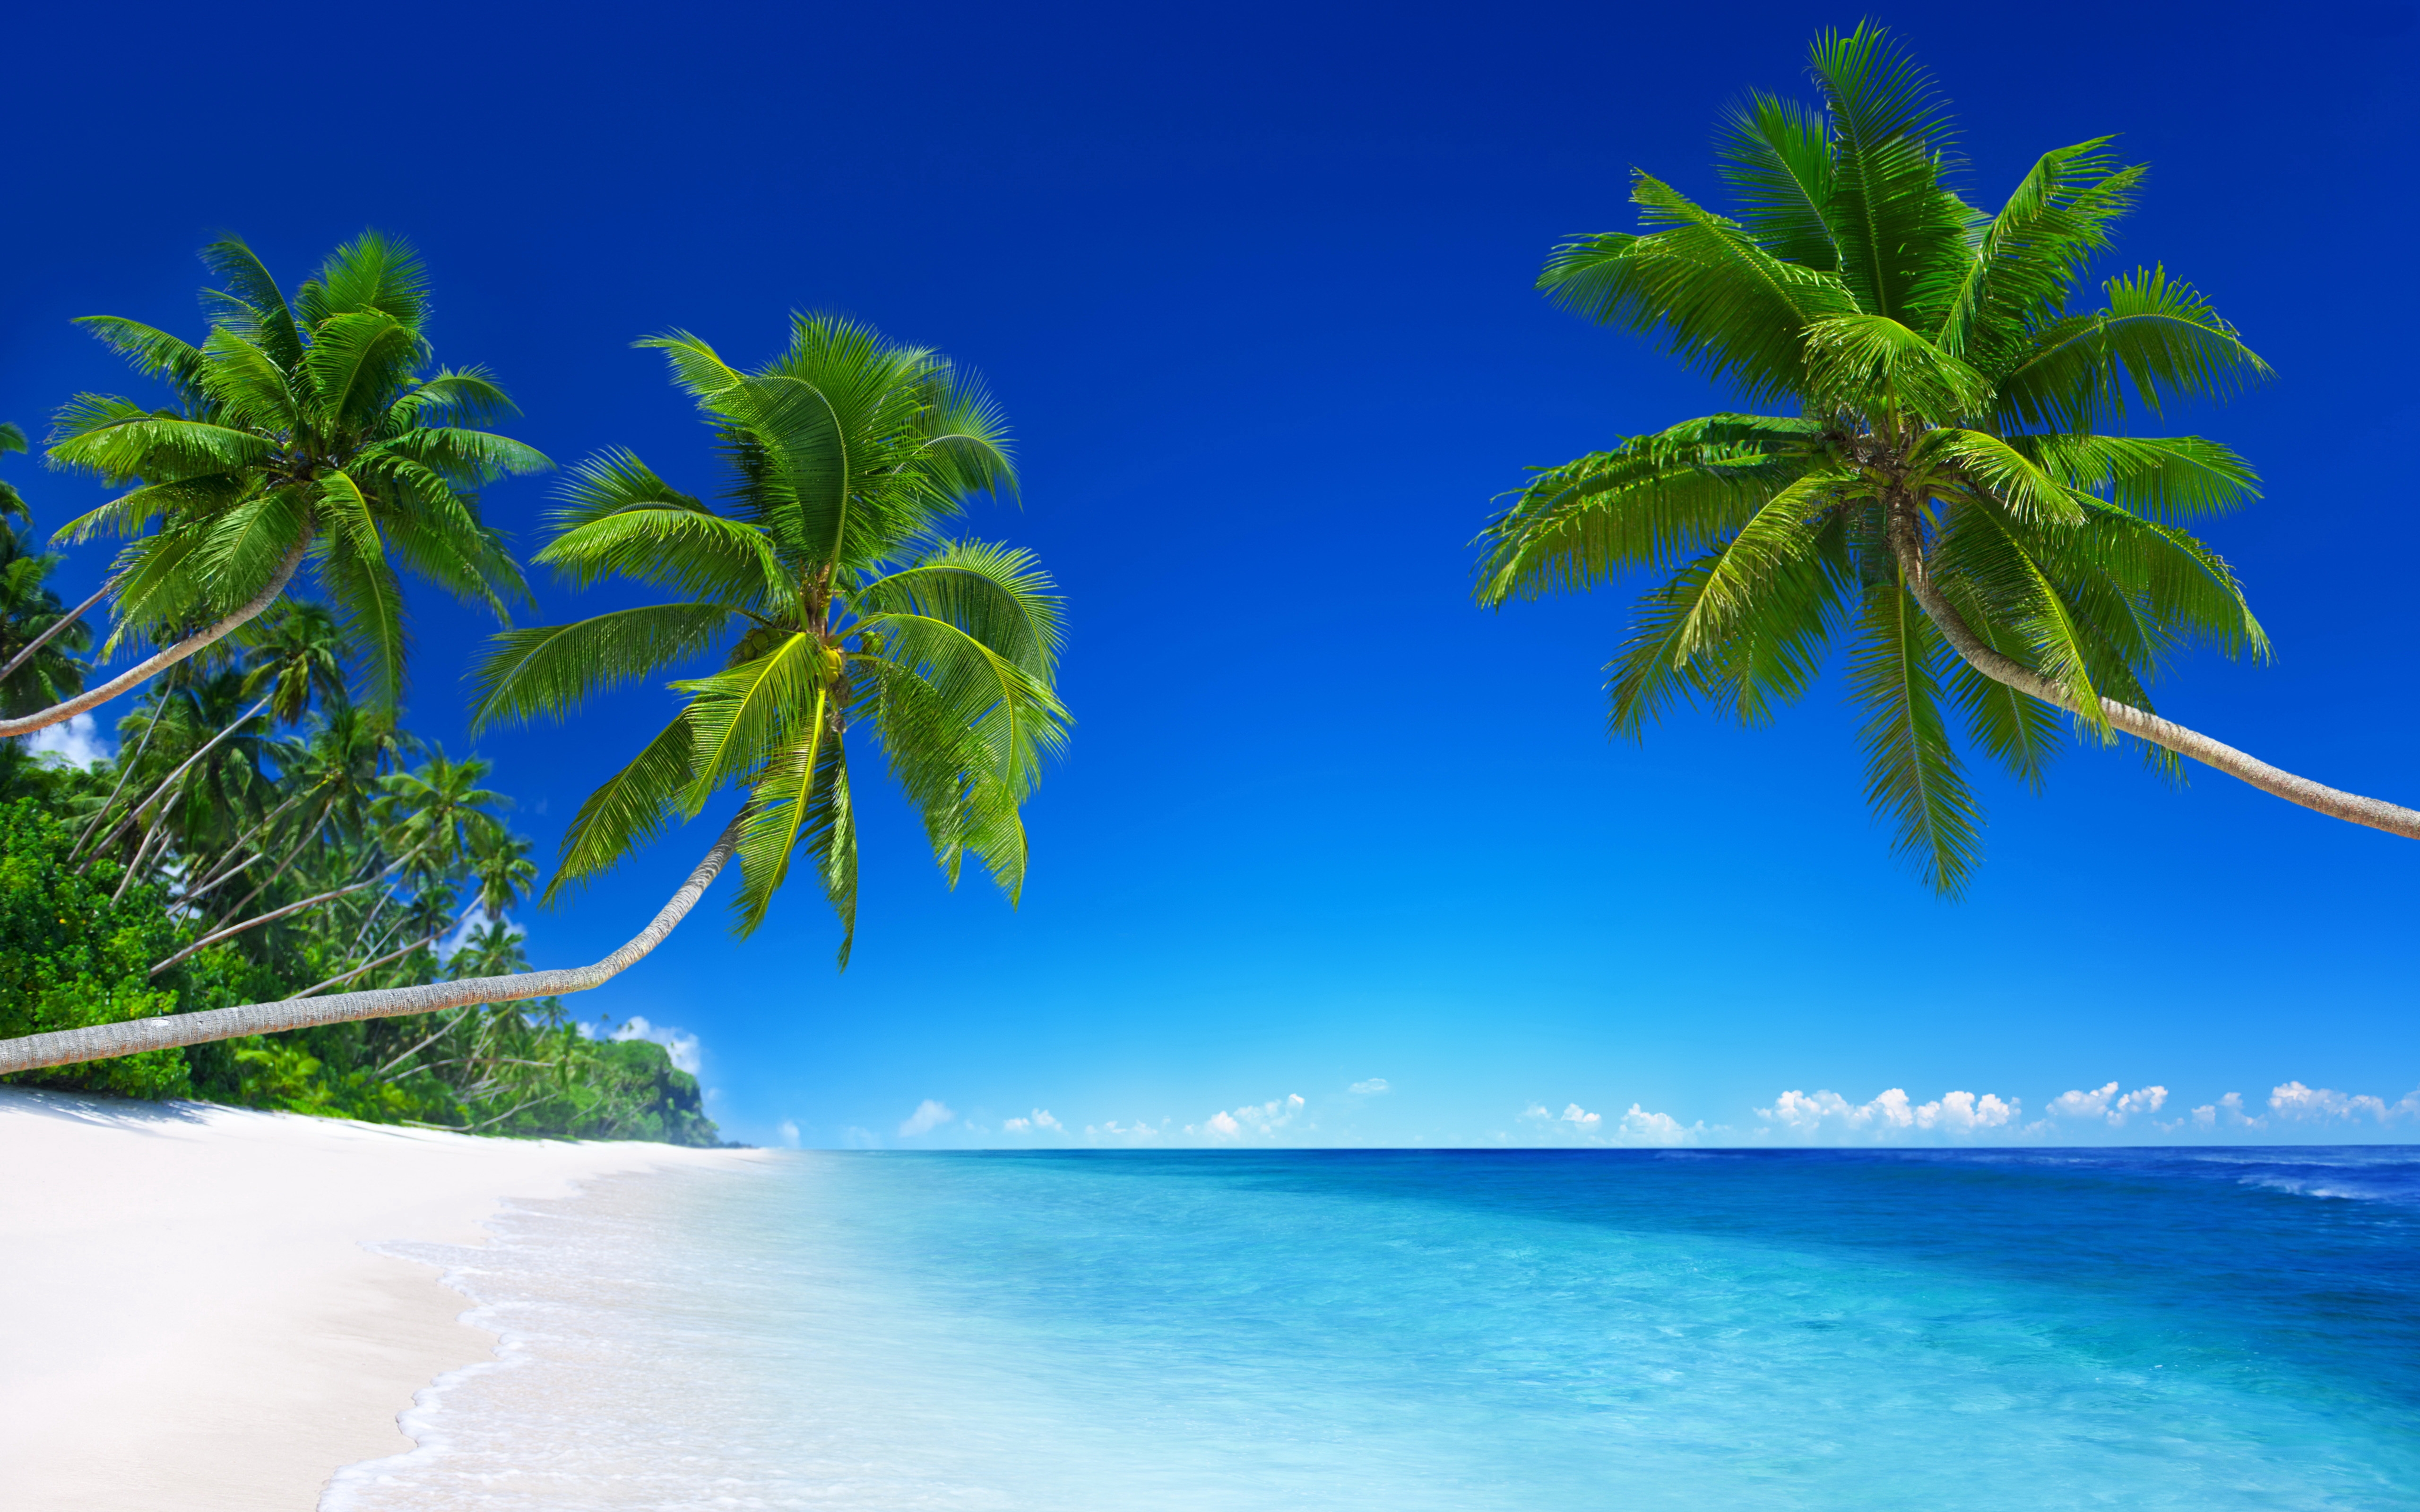 Tropical Beach Paradise 5K93191695 - Tropical Beach Paradise 5K - Tropical, Paradise, Beach